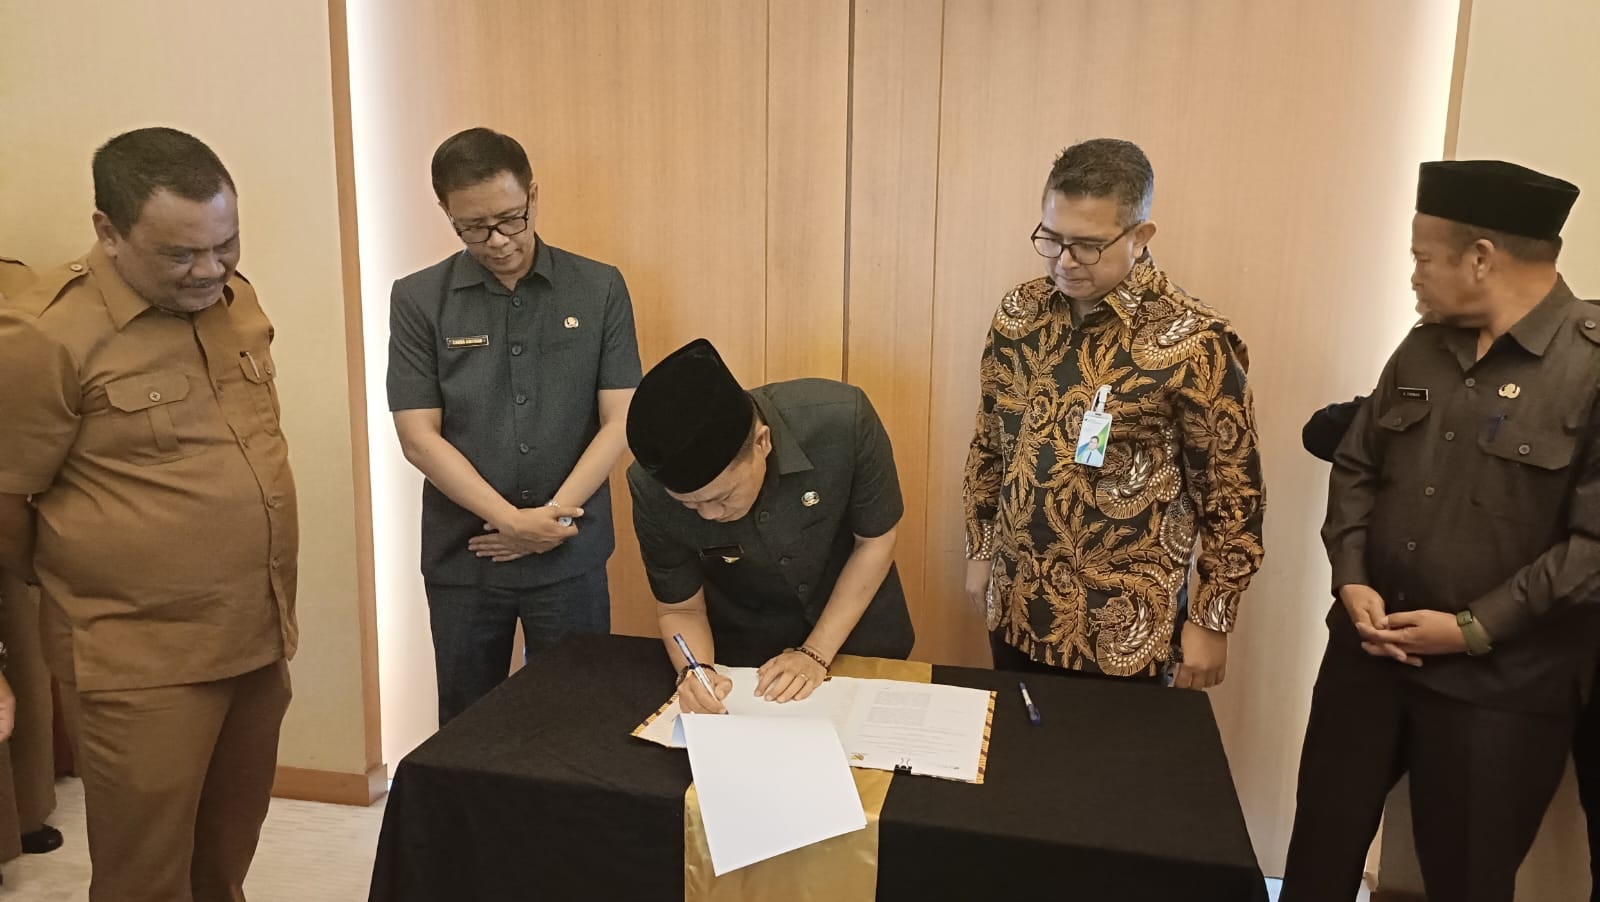 BPJS Ketenagakerjaan Kantor Cabang Bandung Soekarno Hatta bersama dengan Bupati Bandung, H. M Dadang Supriatna menandatangani MoU mengenai Perlindungan Jaminan Sosial Ketenagakerjaan untuk para pekerja di Kabupaten Bandung.